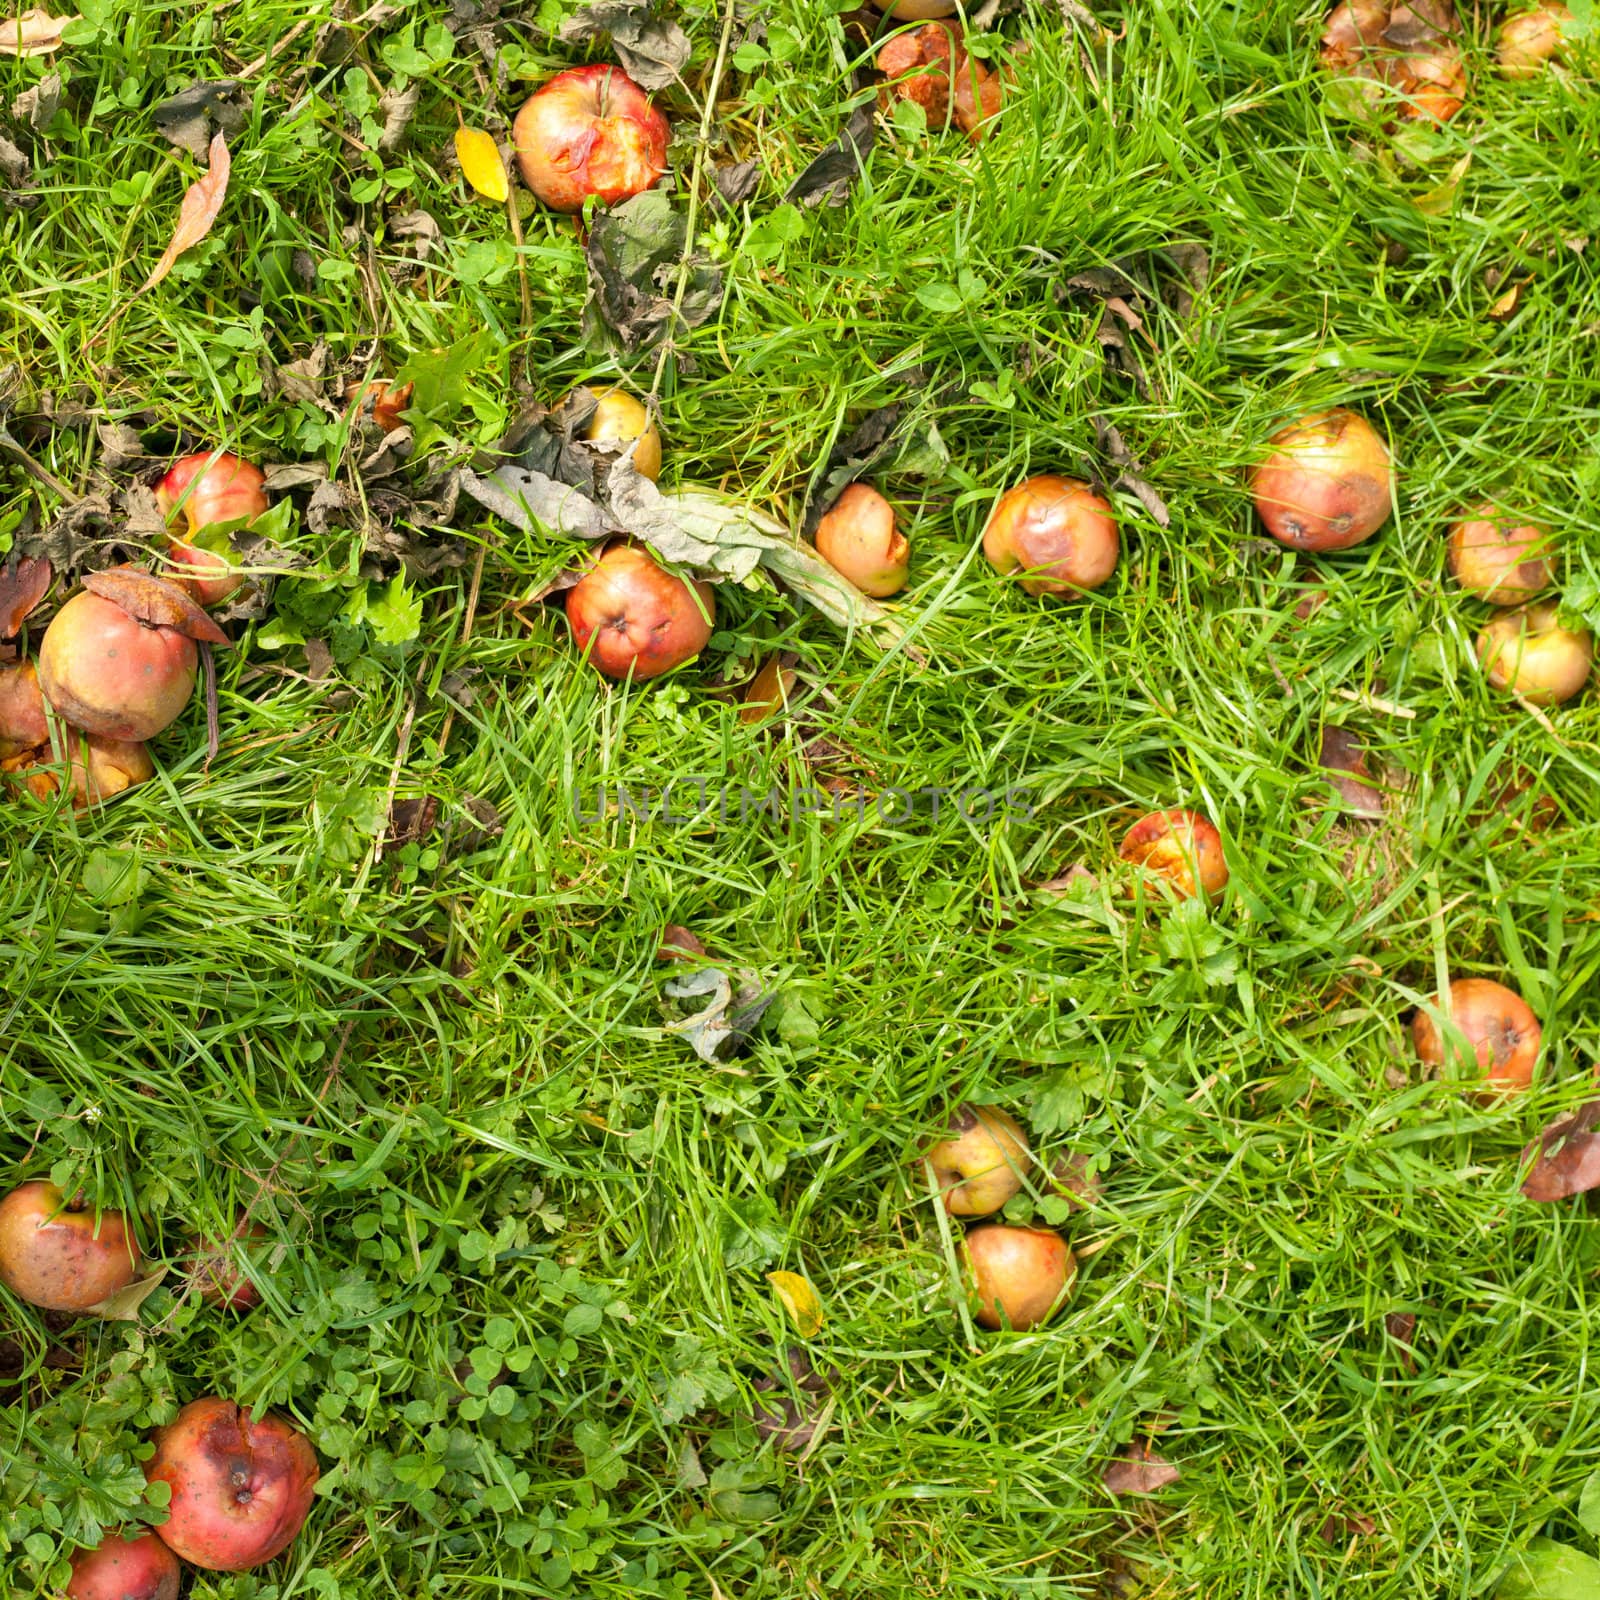 Fallen apples on grass by PiLens